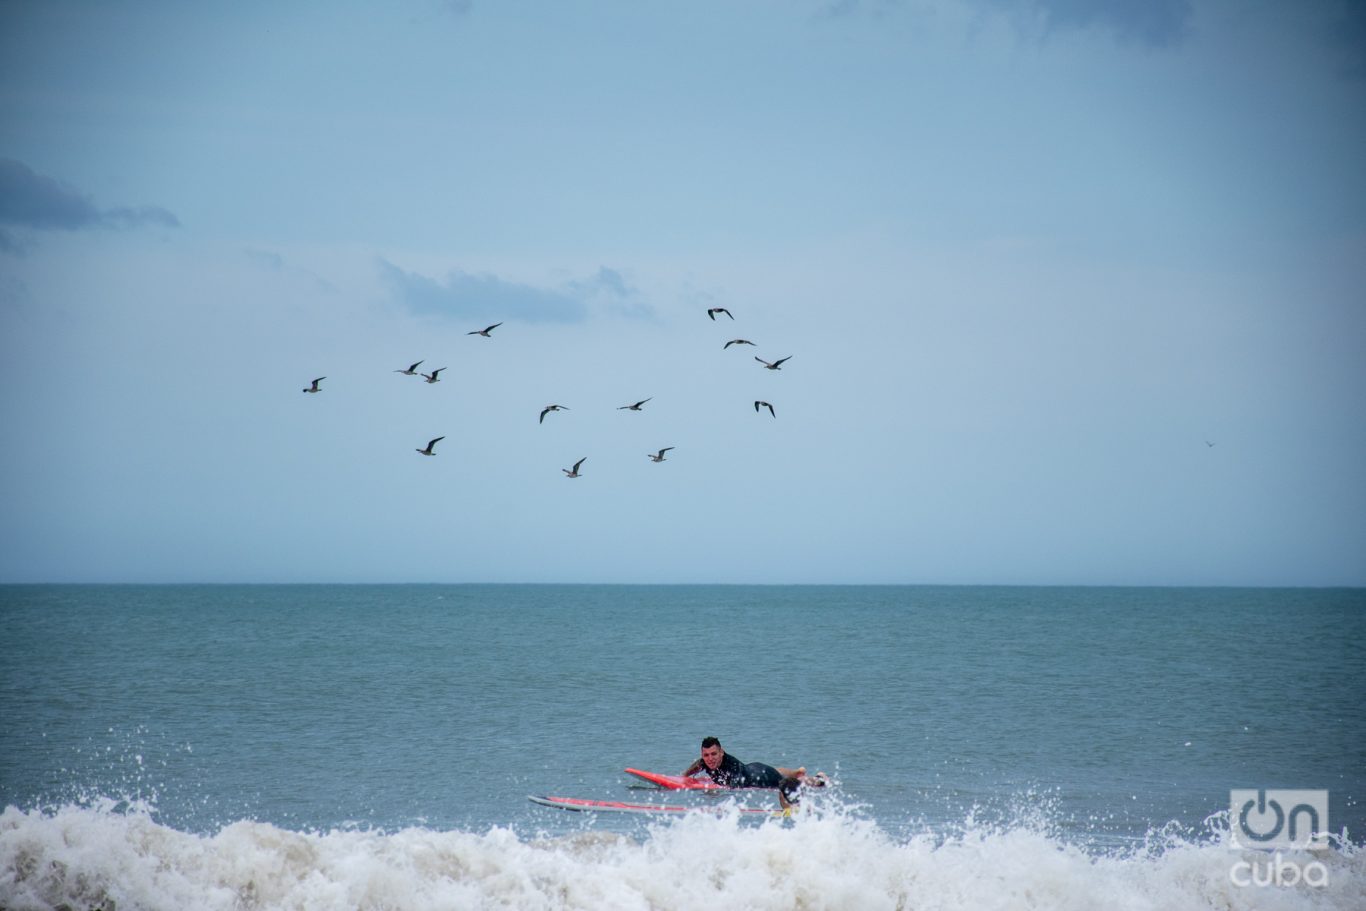  La esencia del surf reside en los desafíos que impone la propia naturaleza. Foto: Kaloian.